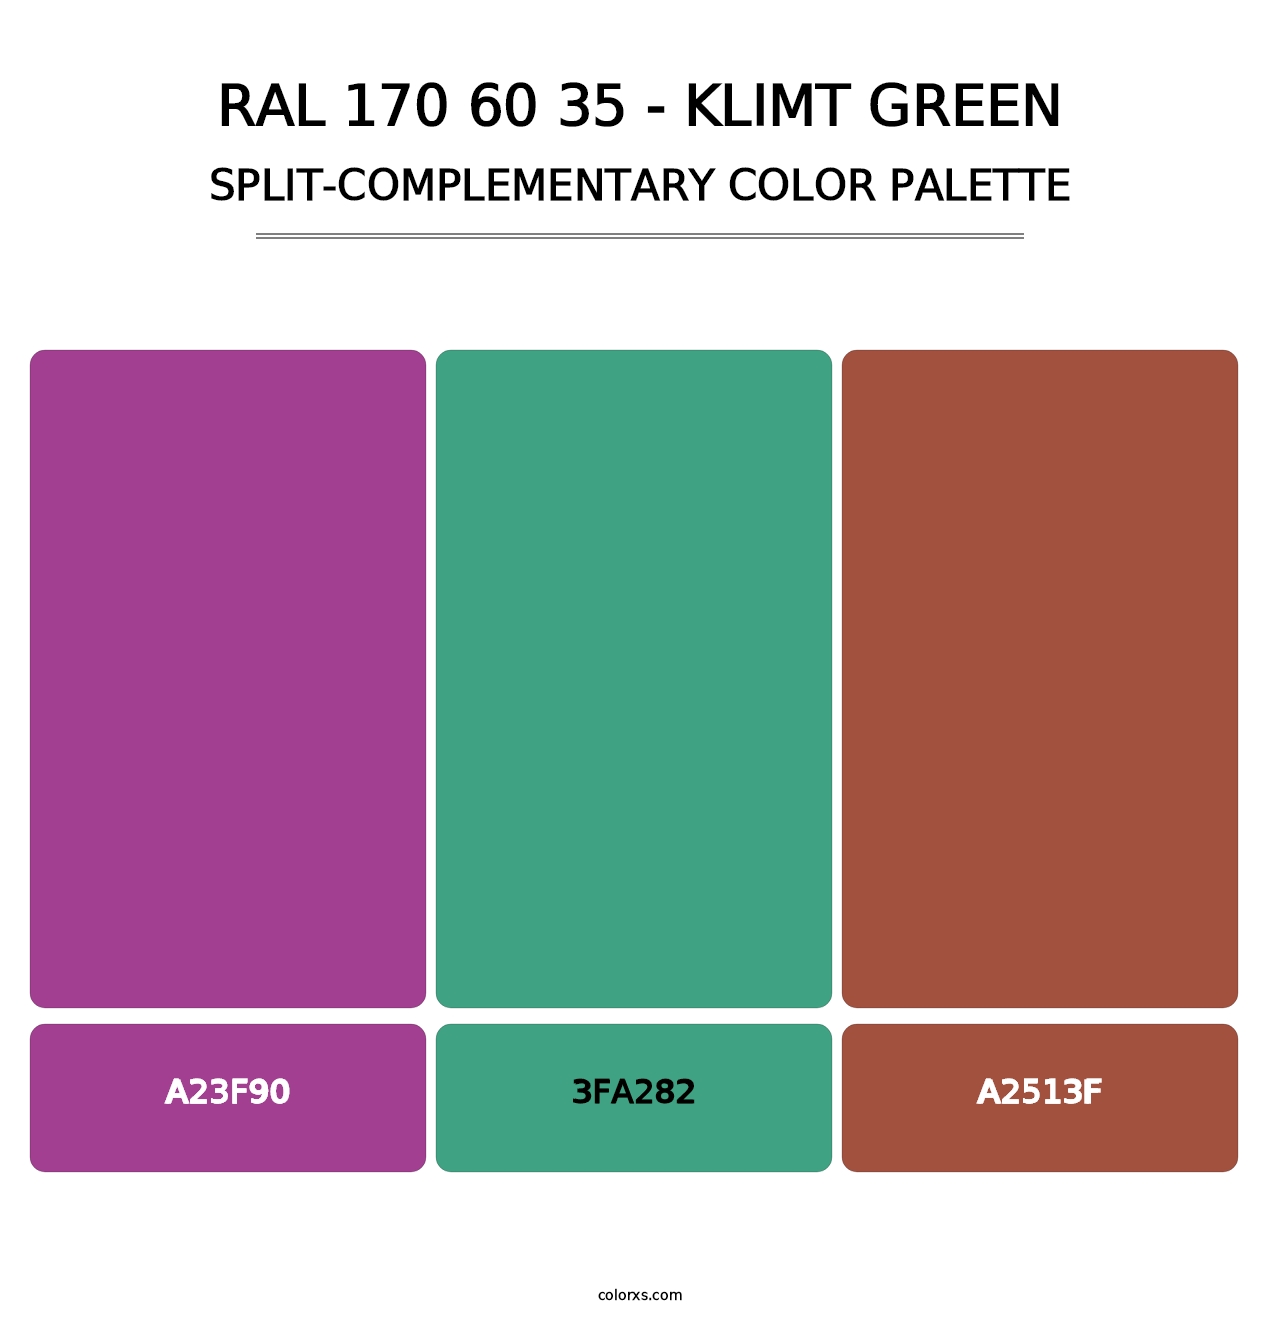 RAL 170 60 35 - Klimt Green - Split-Complementary Color Palette